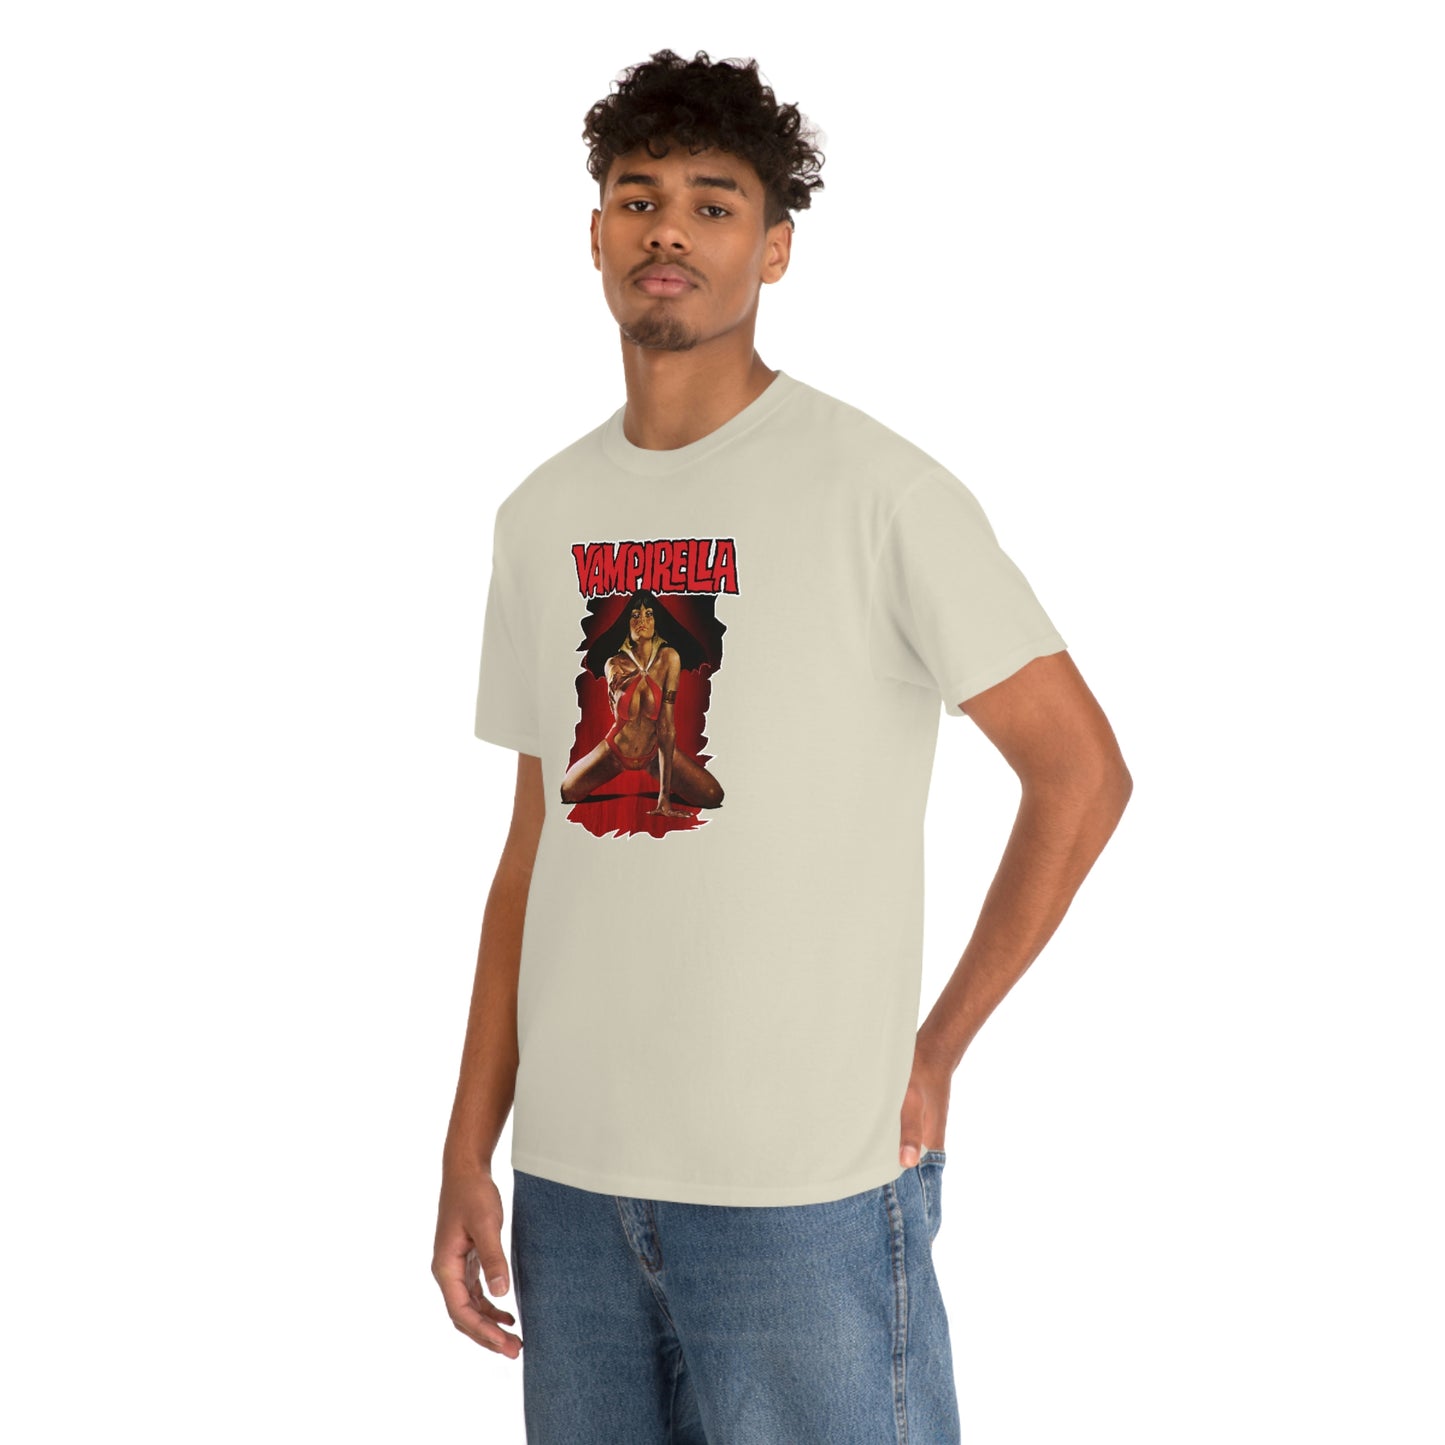 Vampirella T-Shirt